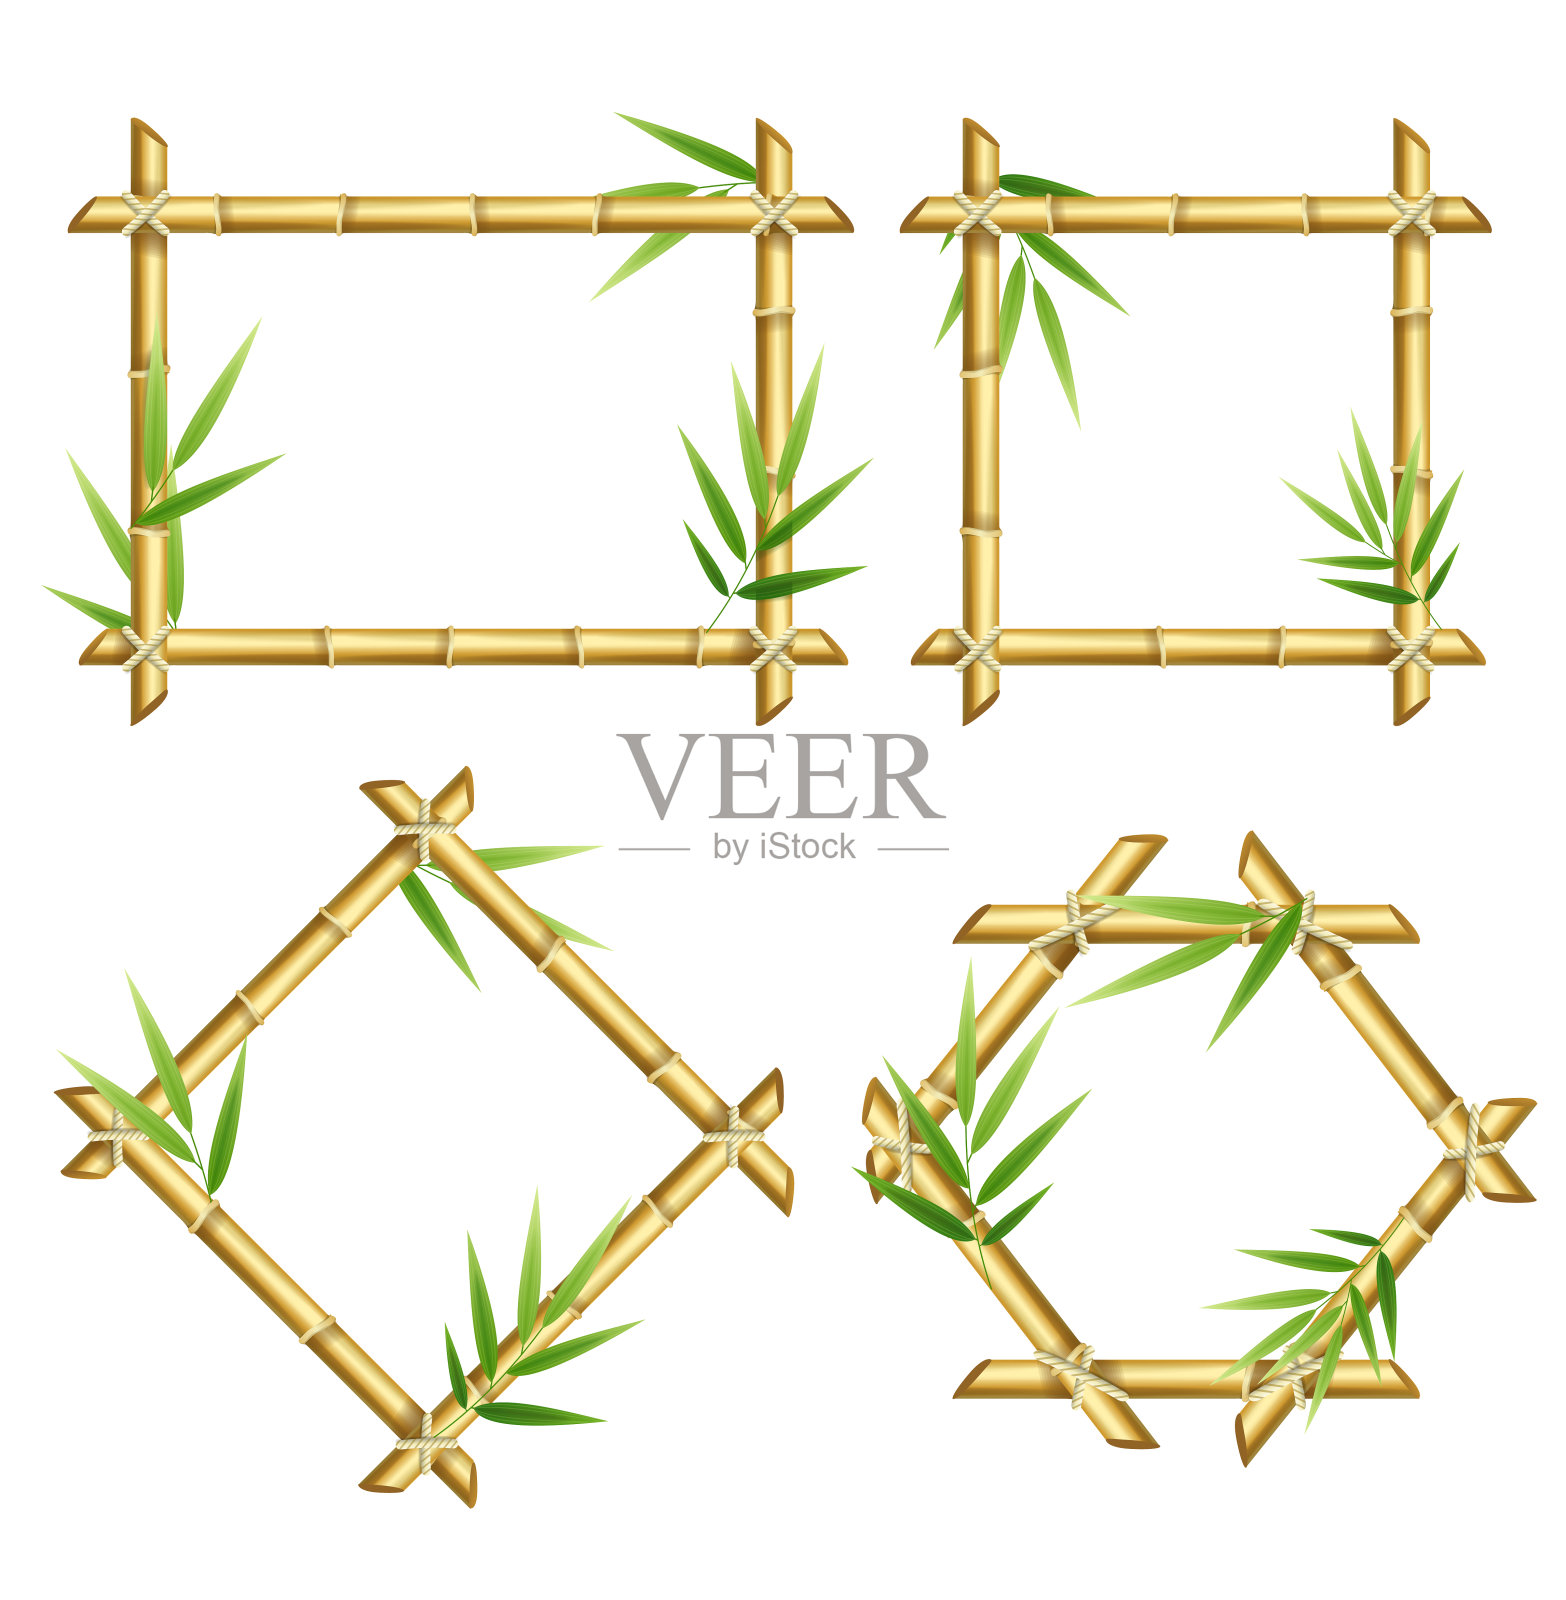 逼真的3d详细的竹笋框架集。向量插画图片素材